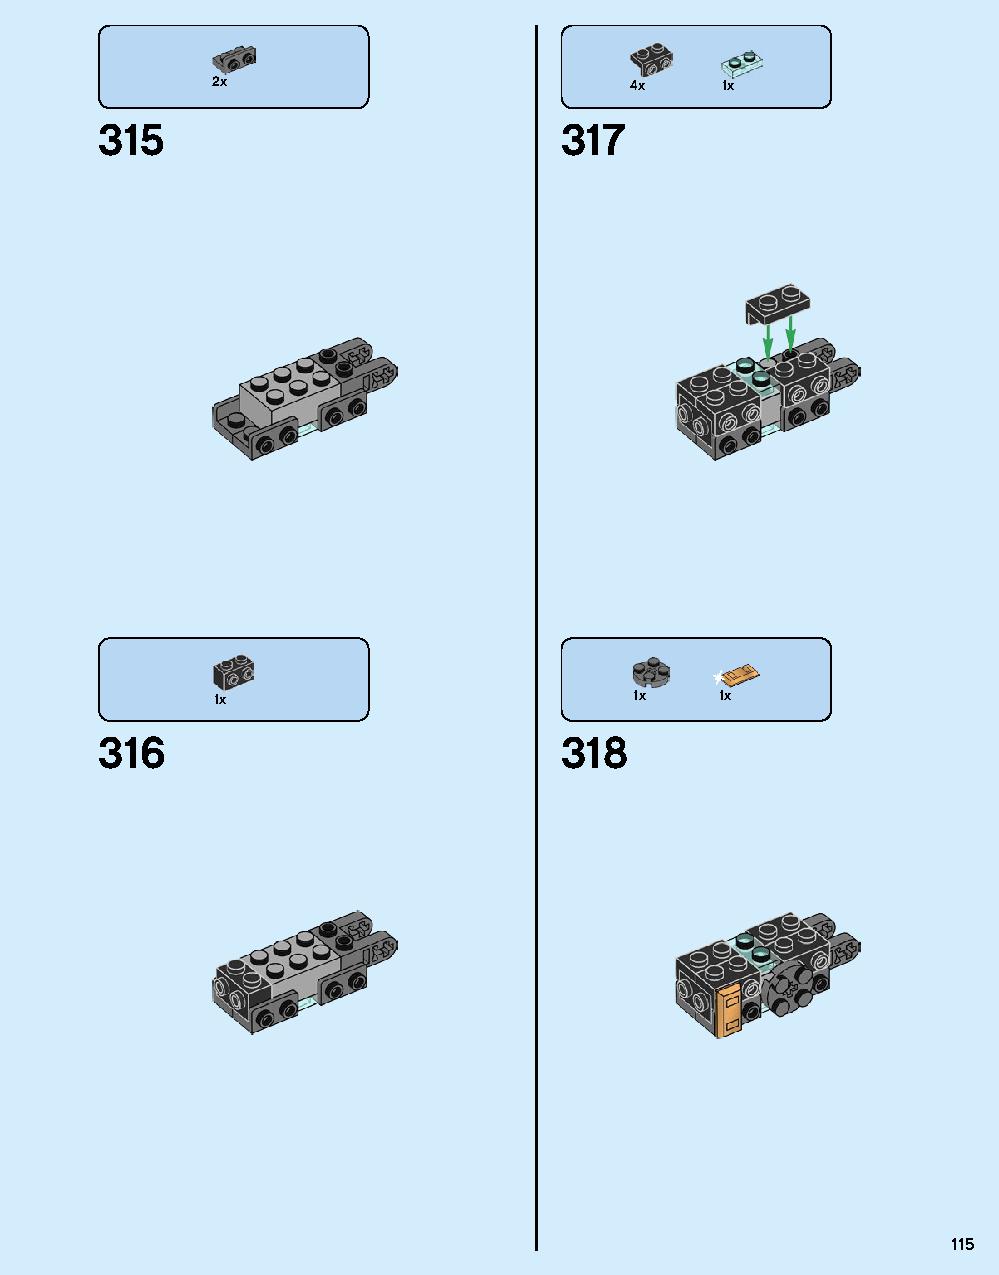 ハルクバスター：ウルトロン・エディション 76105 レゴの商品情報 レゴの説明書・組立方法 115 page